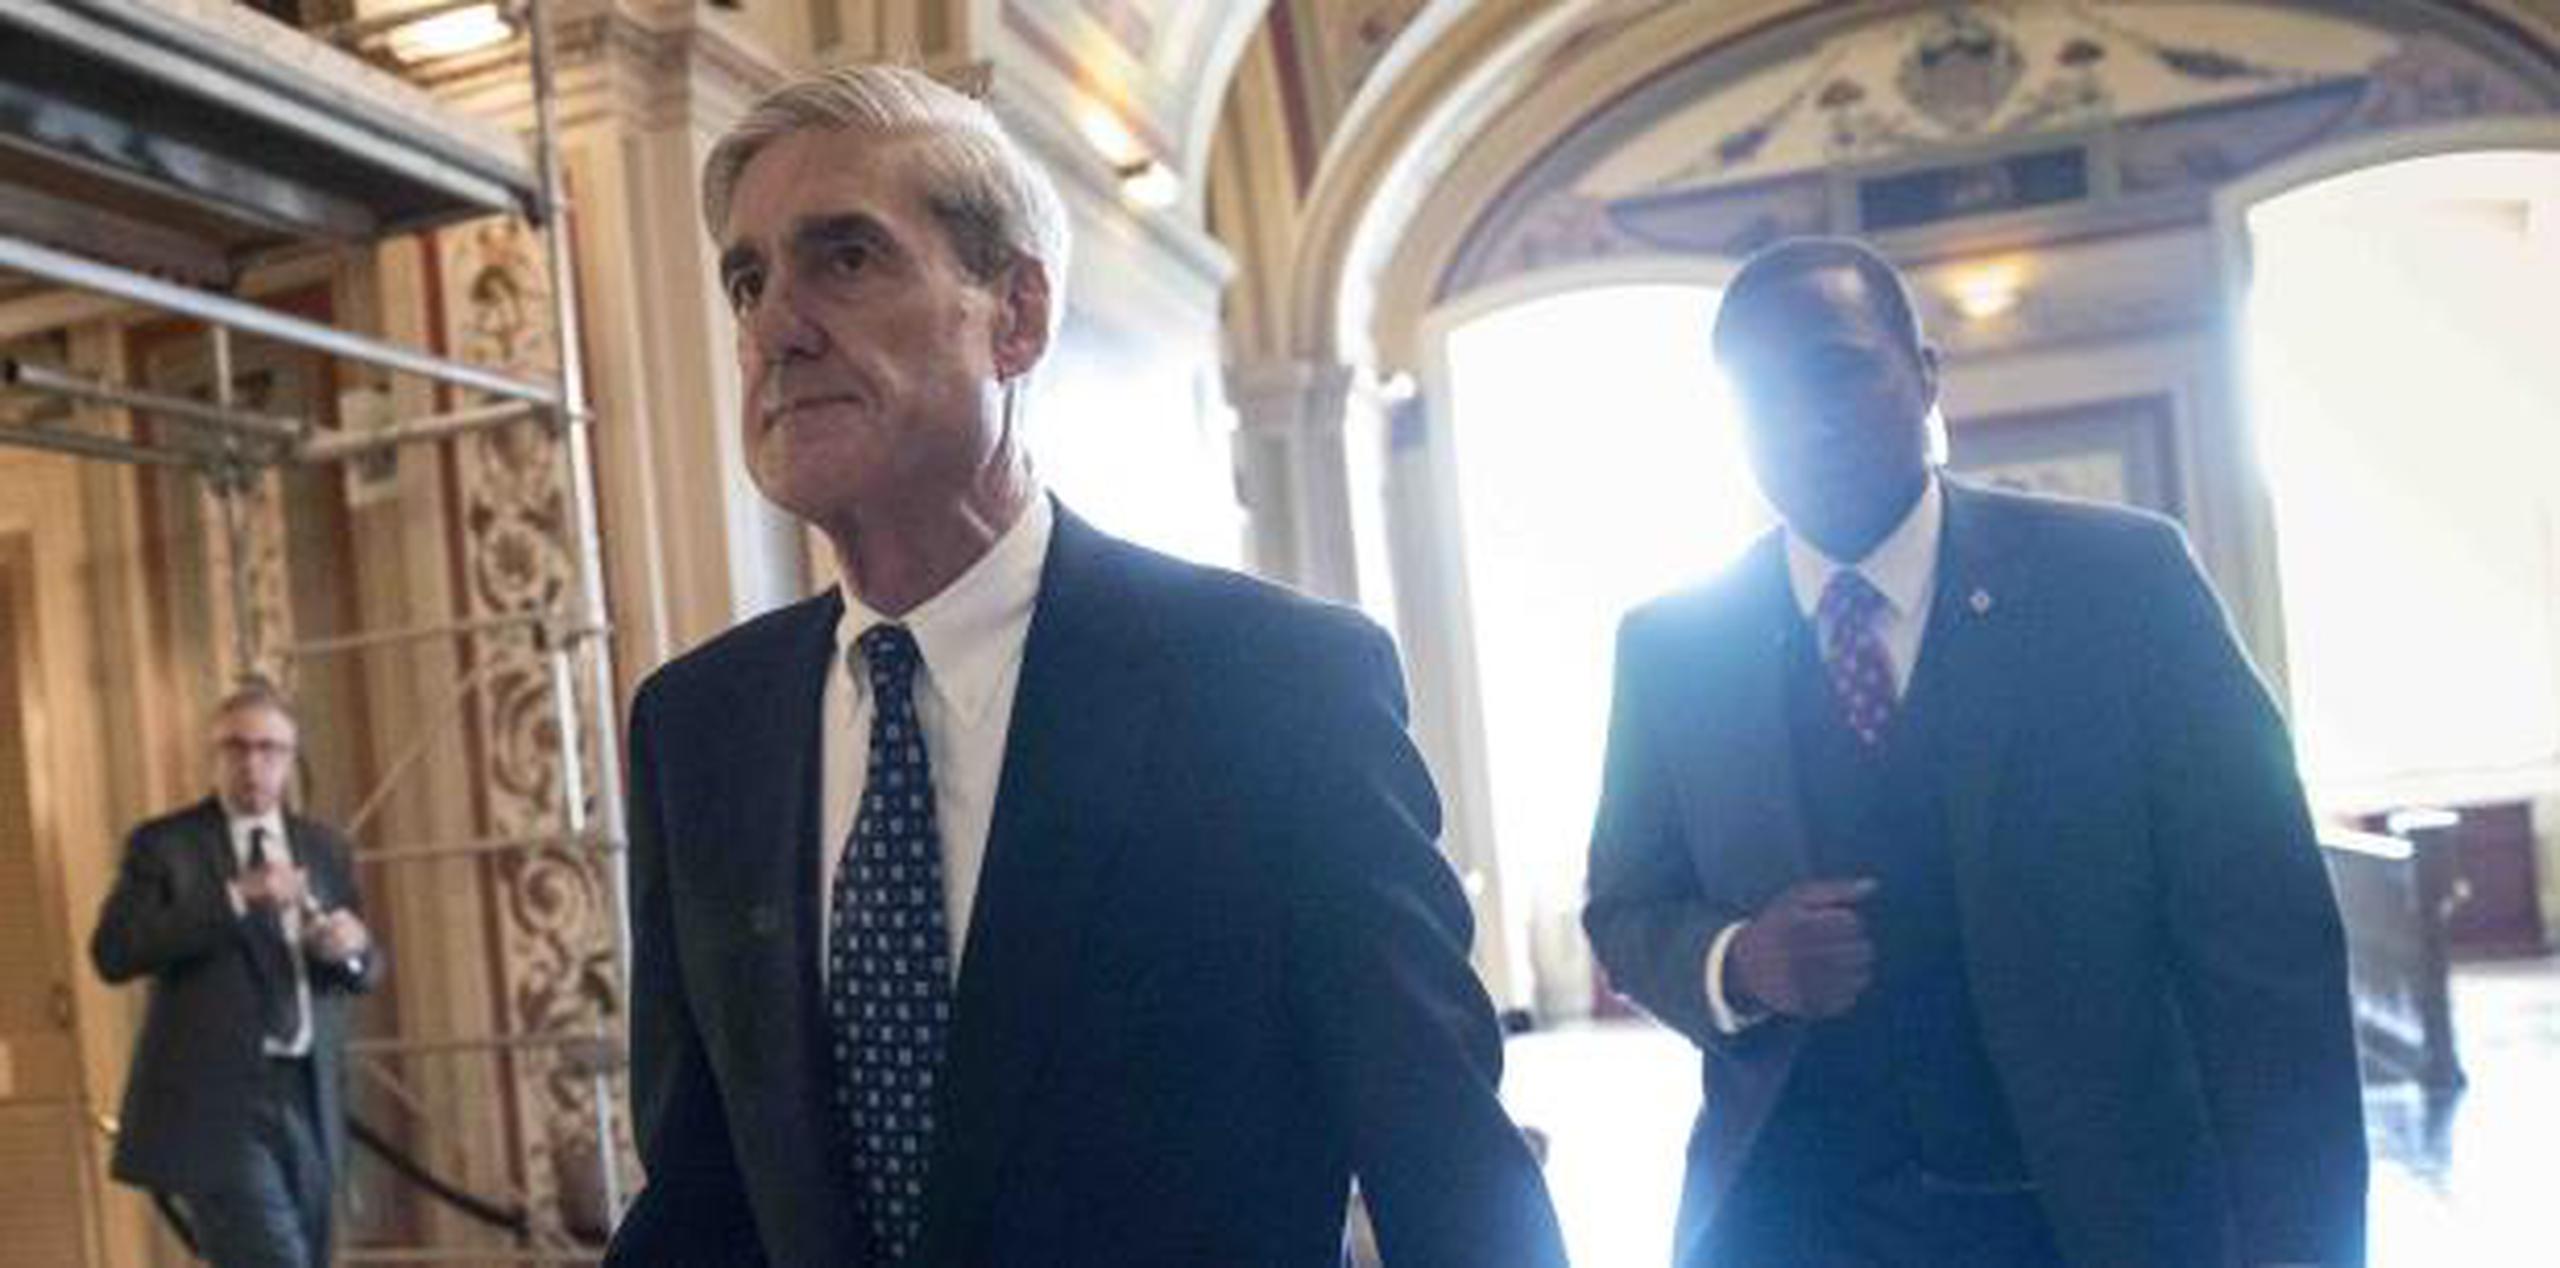 Hasta el momento en la pesquisa capitaneada por Mueller 19 personas han sido acusados, incluyendo cuatro asesores de la campaña presidencial, y a tres empresas rusas, mientras  se declararon culpables el exasesor de Seguridad Nacional  y el subdirector de su campaña. (Archivo)

